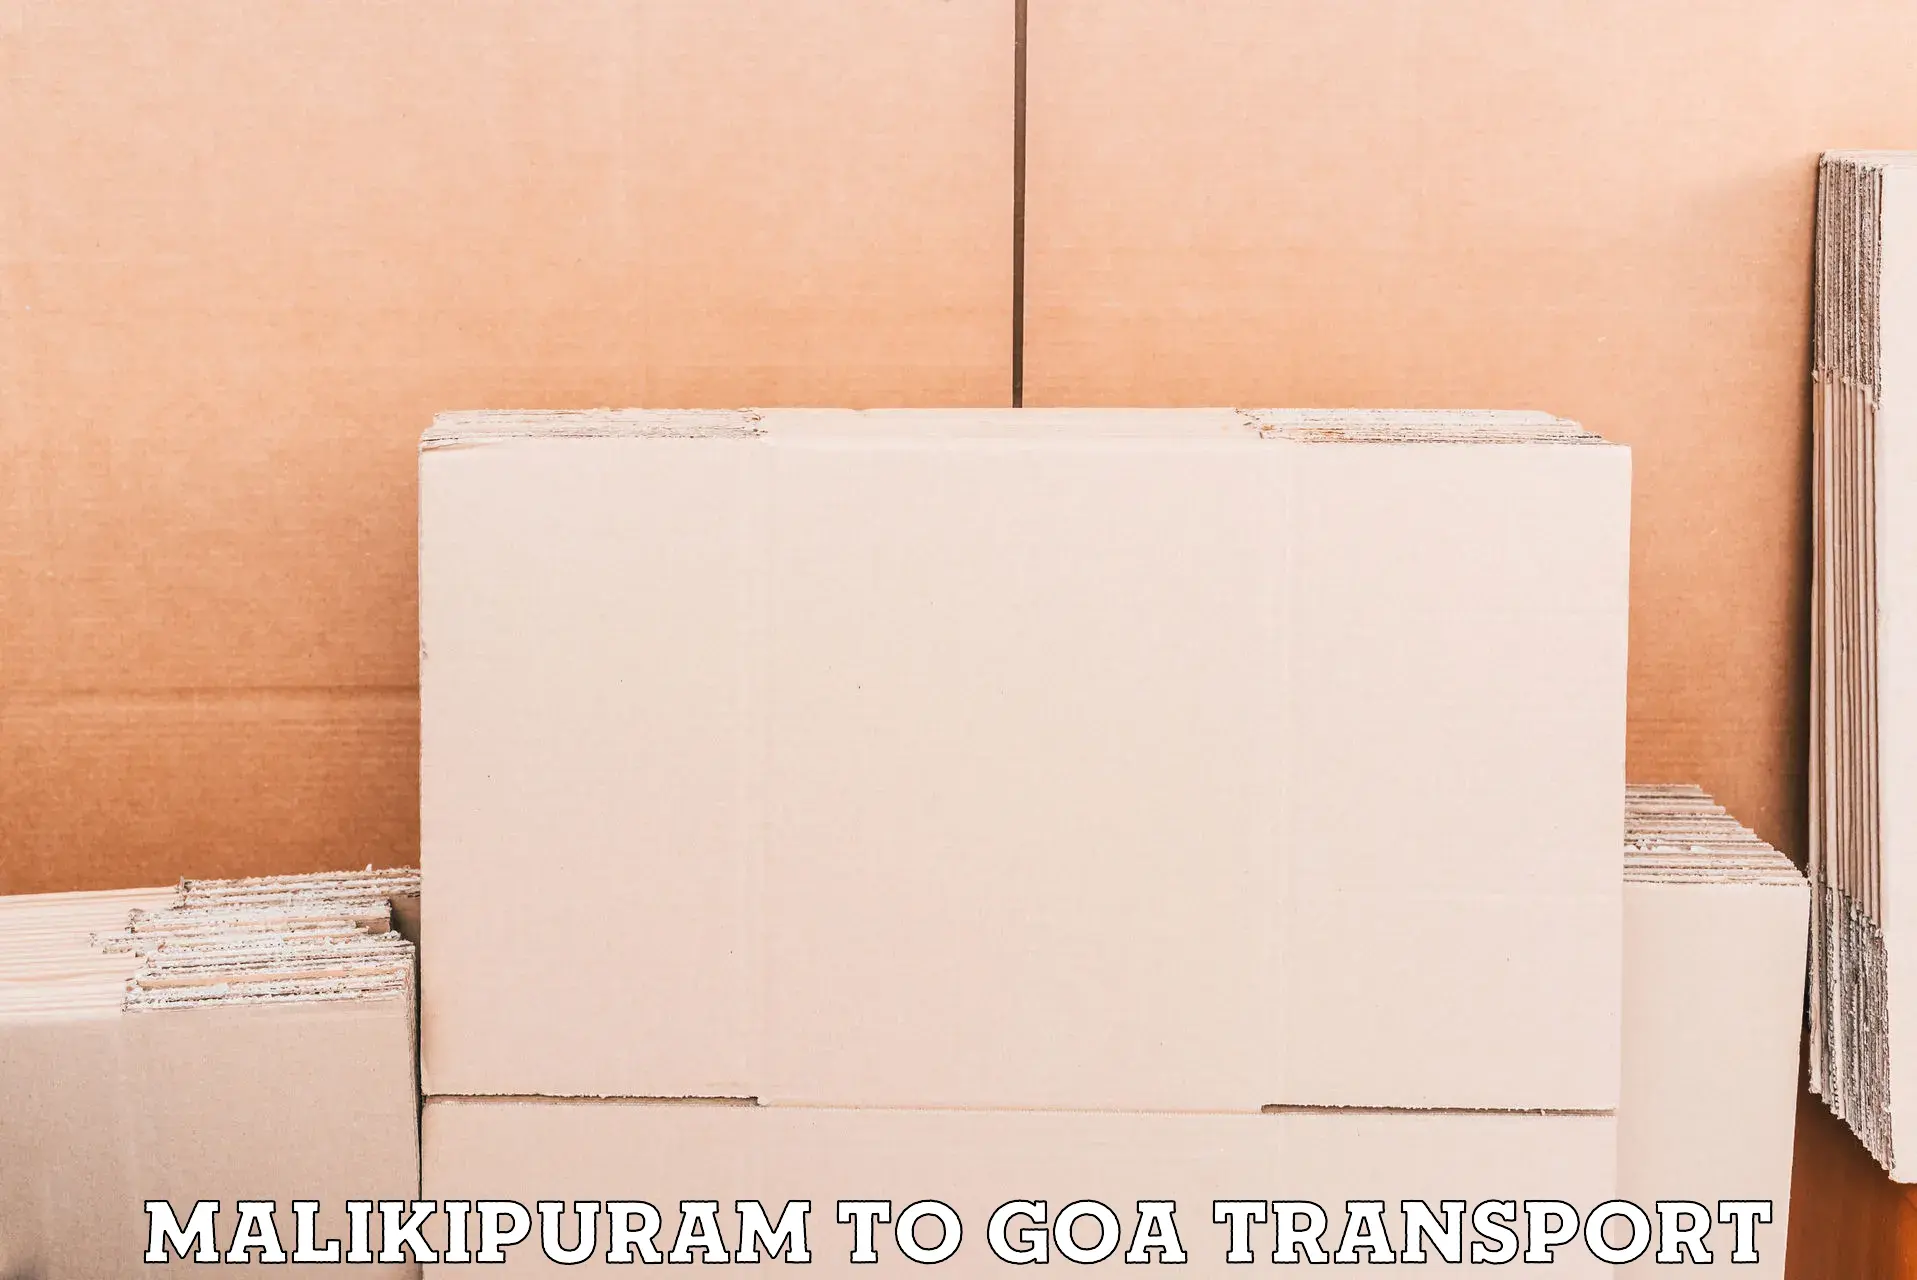 Vehicle parcel service Malikipuram to Goa